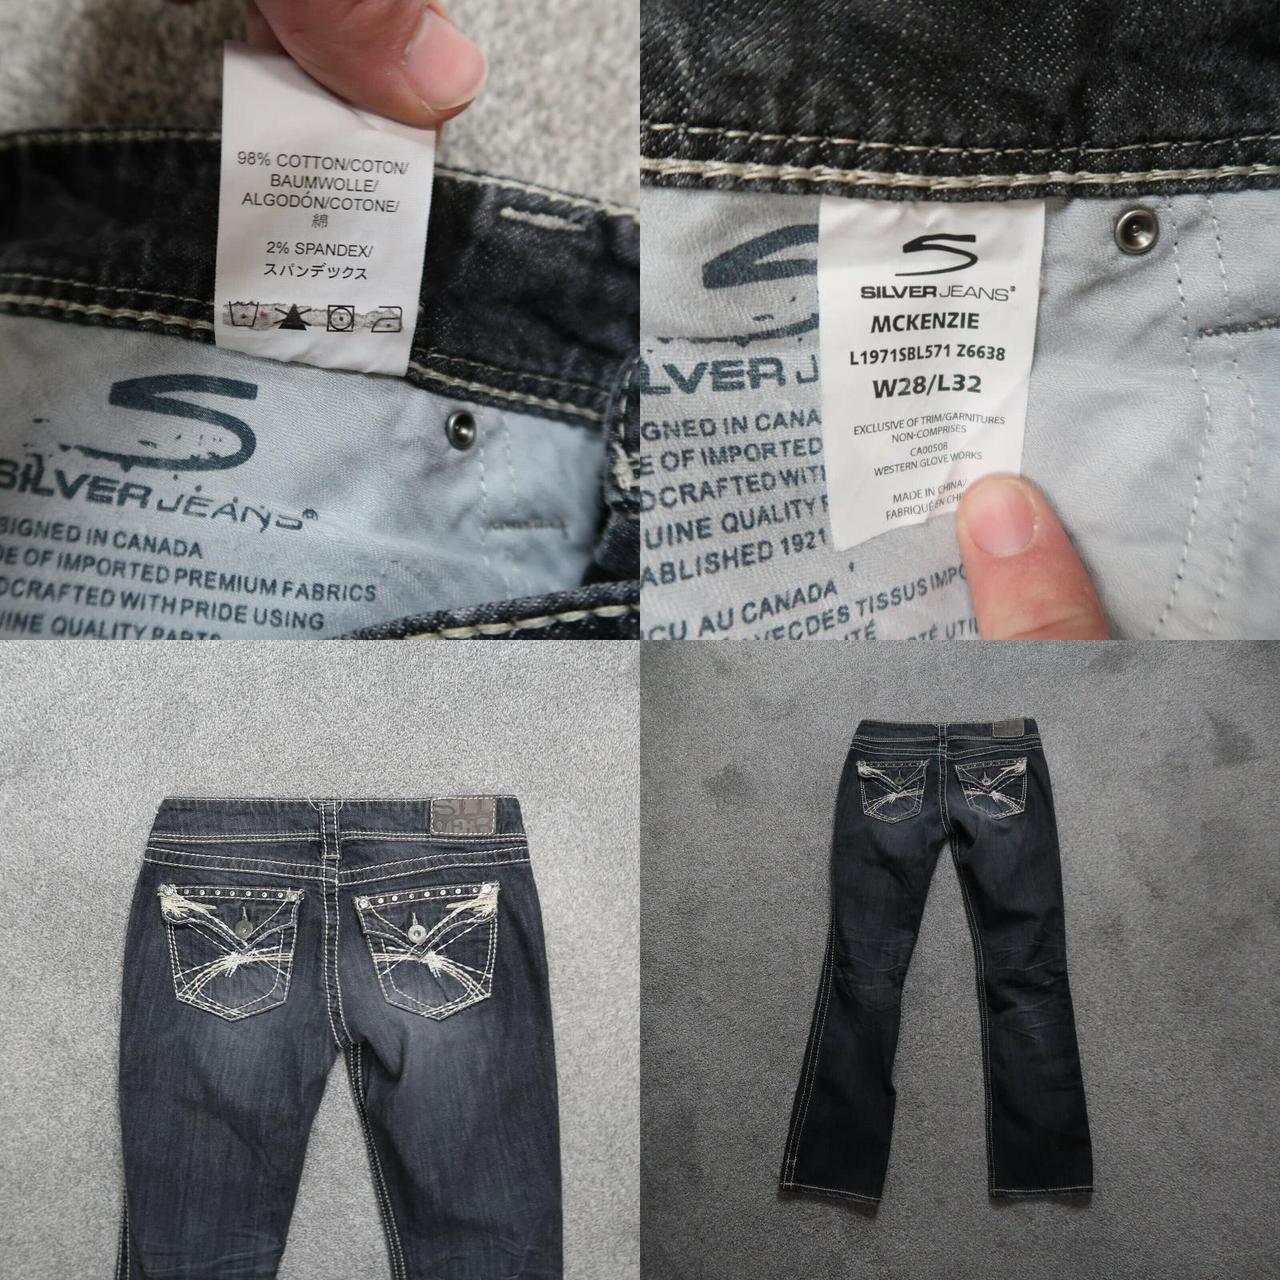 Silver Jeans Mckenzie bootcut Jeans Women's... -